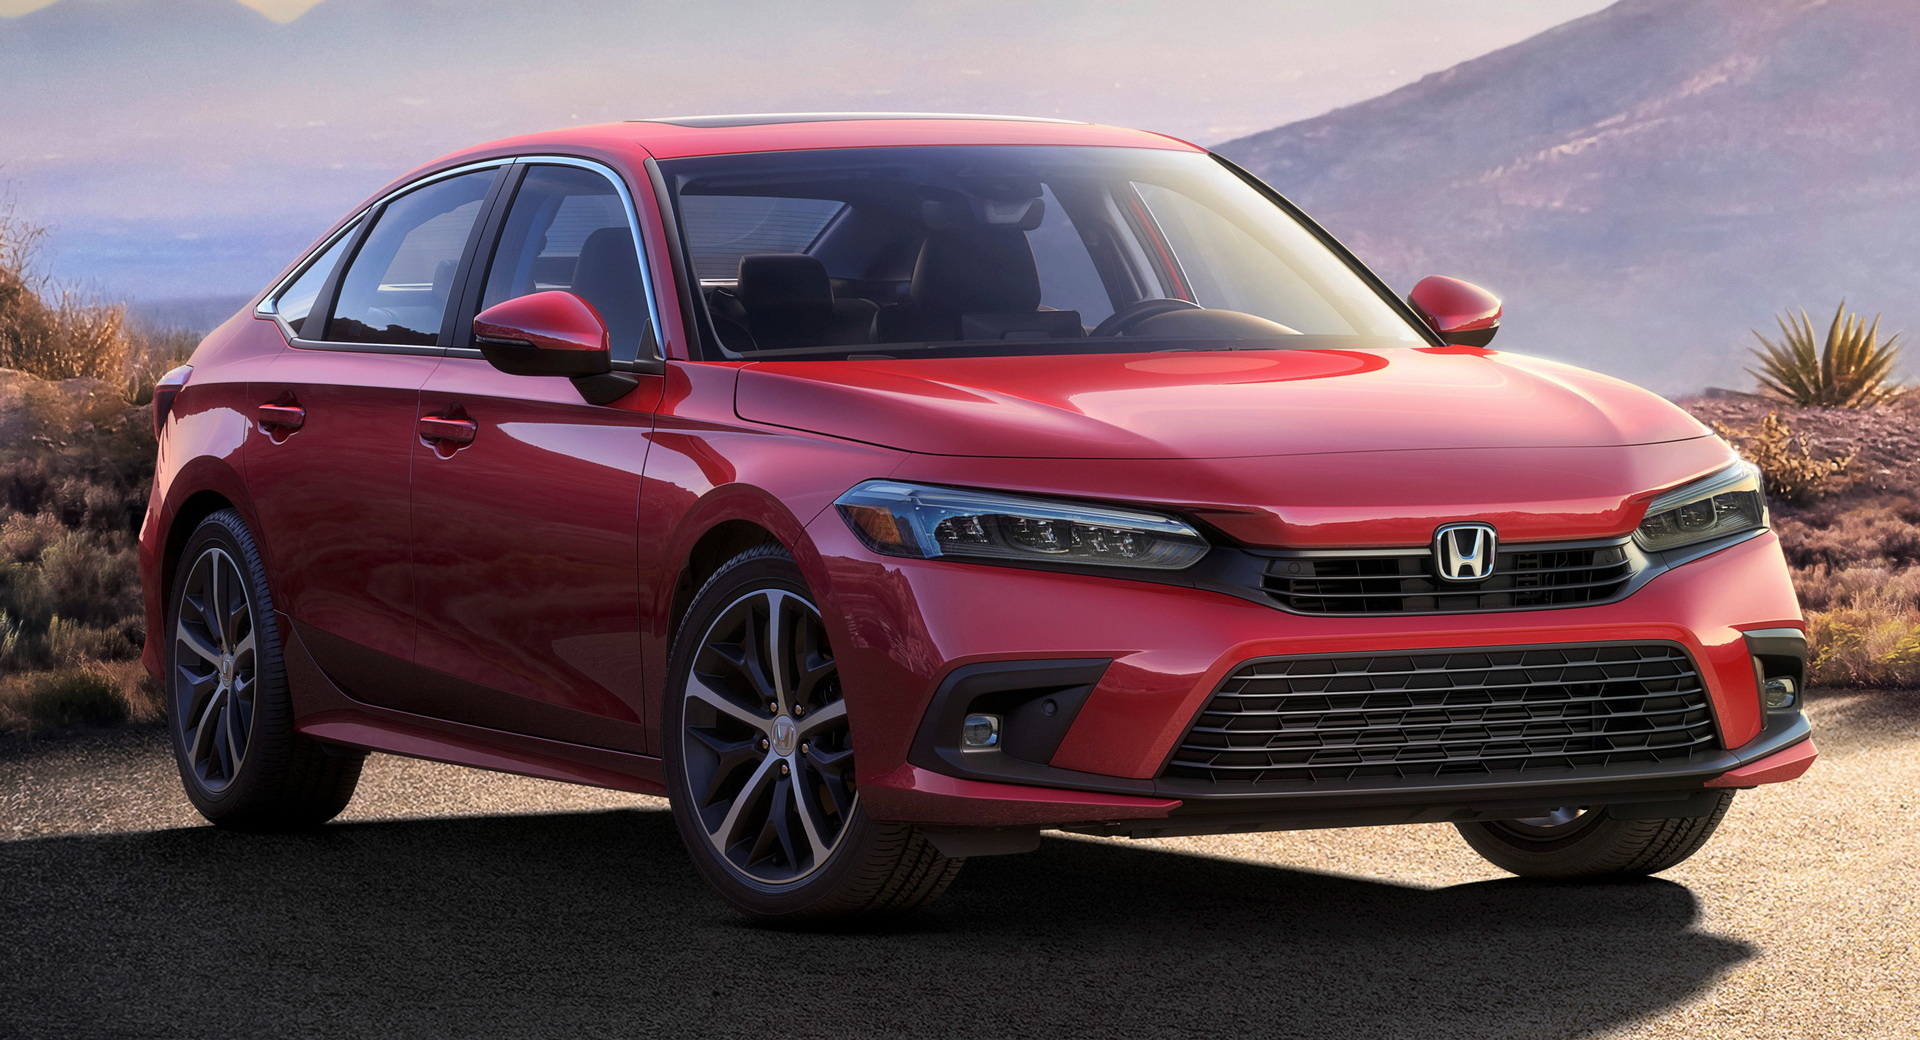 Giá xe Honda Civic 2021 thông số và hình ảnh mới nhất  Blog Xe Hơi Carmudi